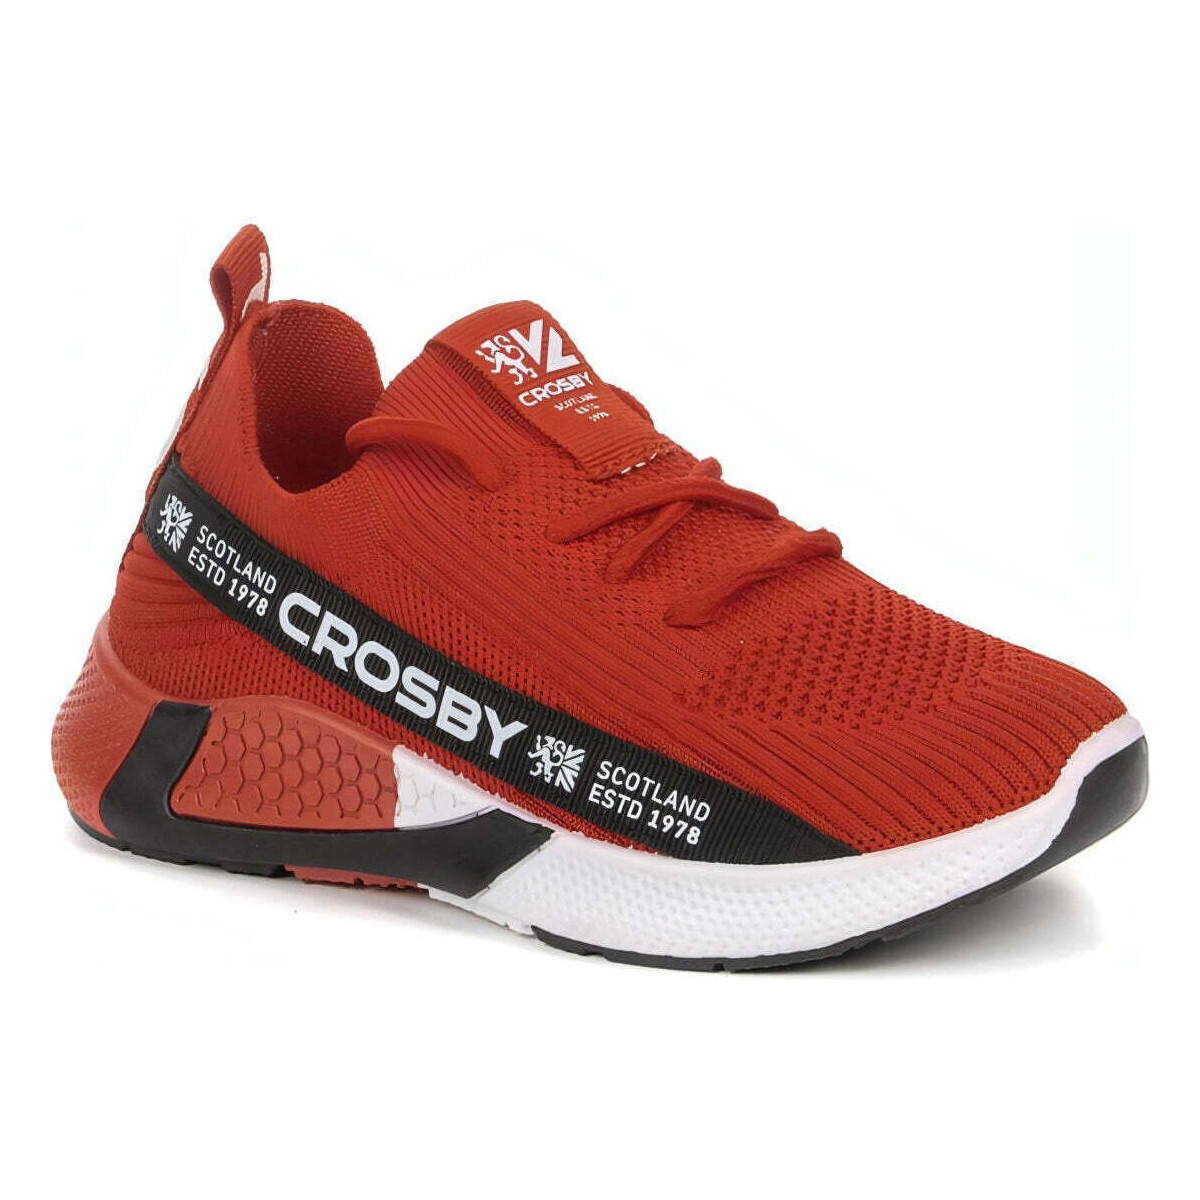 Skor Pojkar Sneakers Crosby  Röd